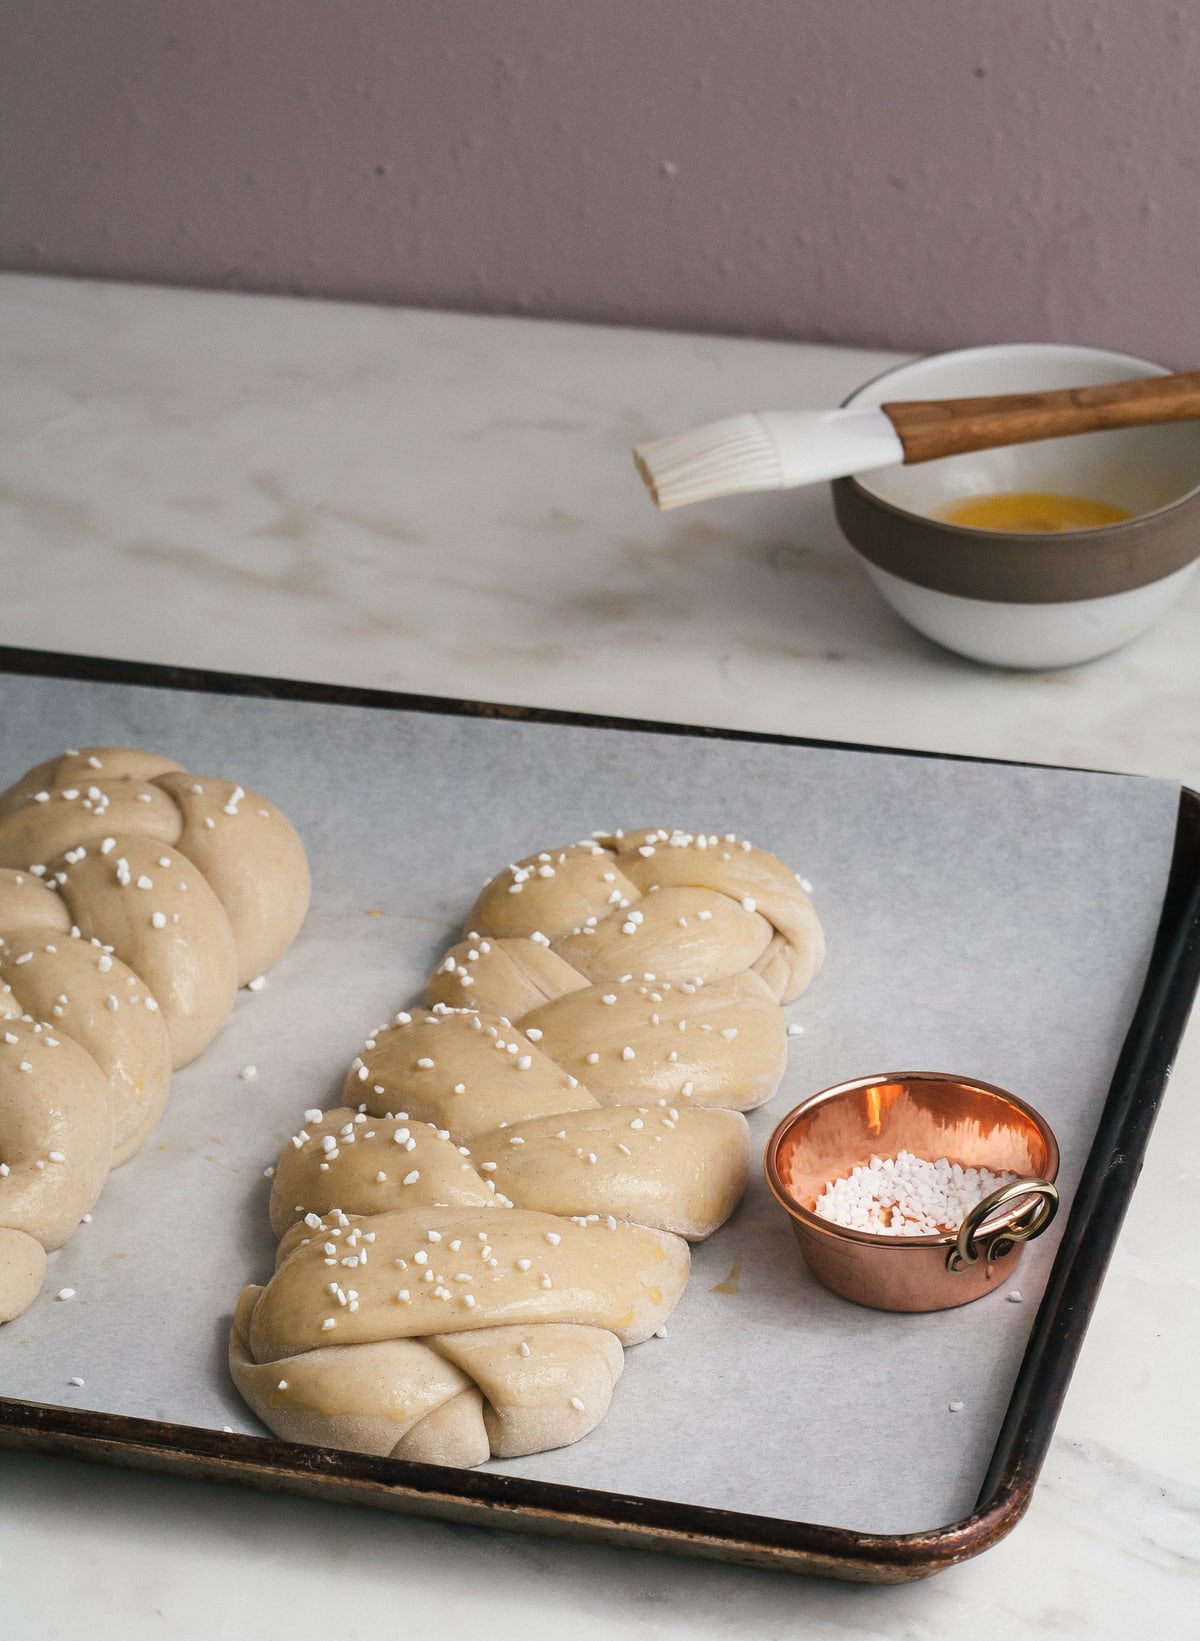 Swedish Cardamom Braided Bread on a baking sheet with pearl sugar. 